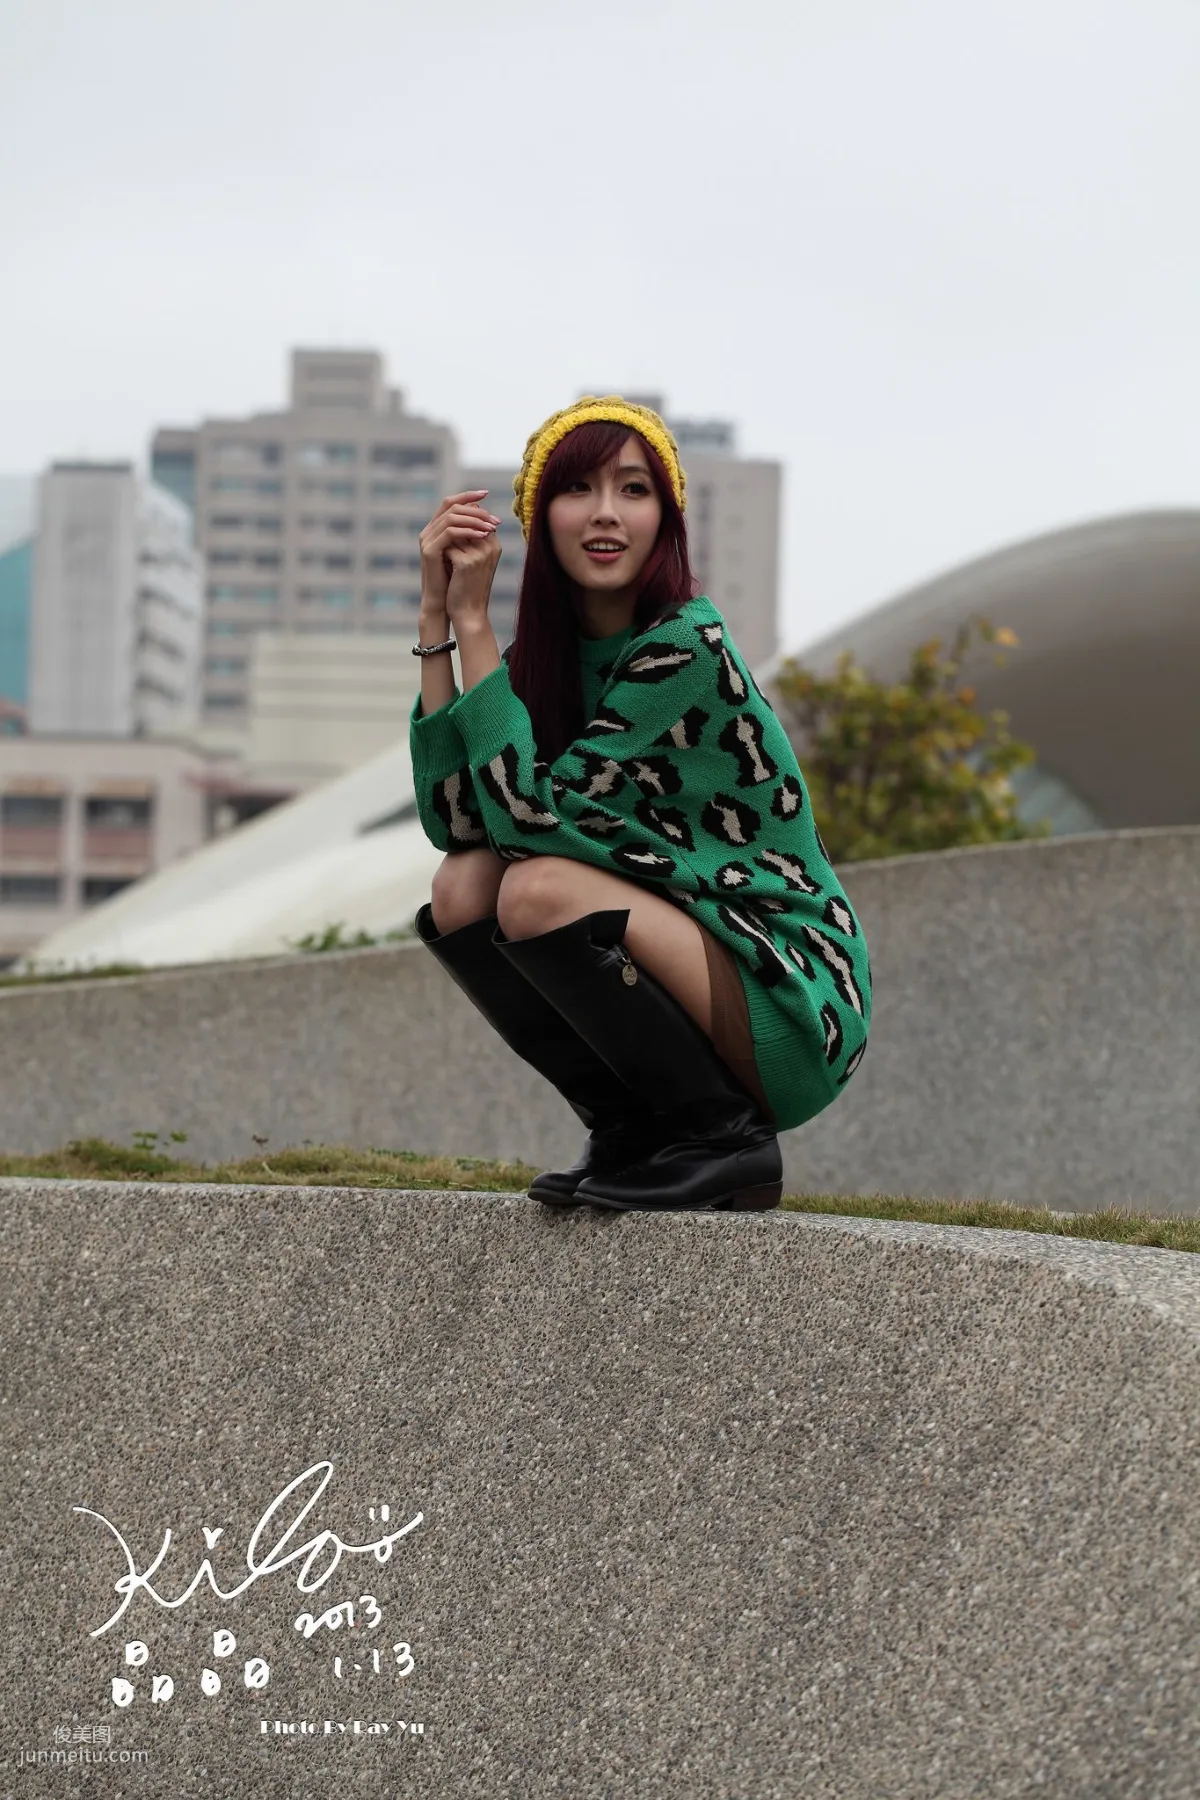 台湾模特廖挺伶/Kila晶晶《绿色长衣+长靴》街拍写真集11